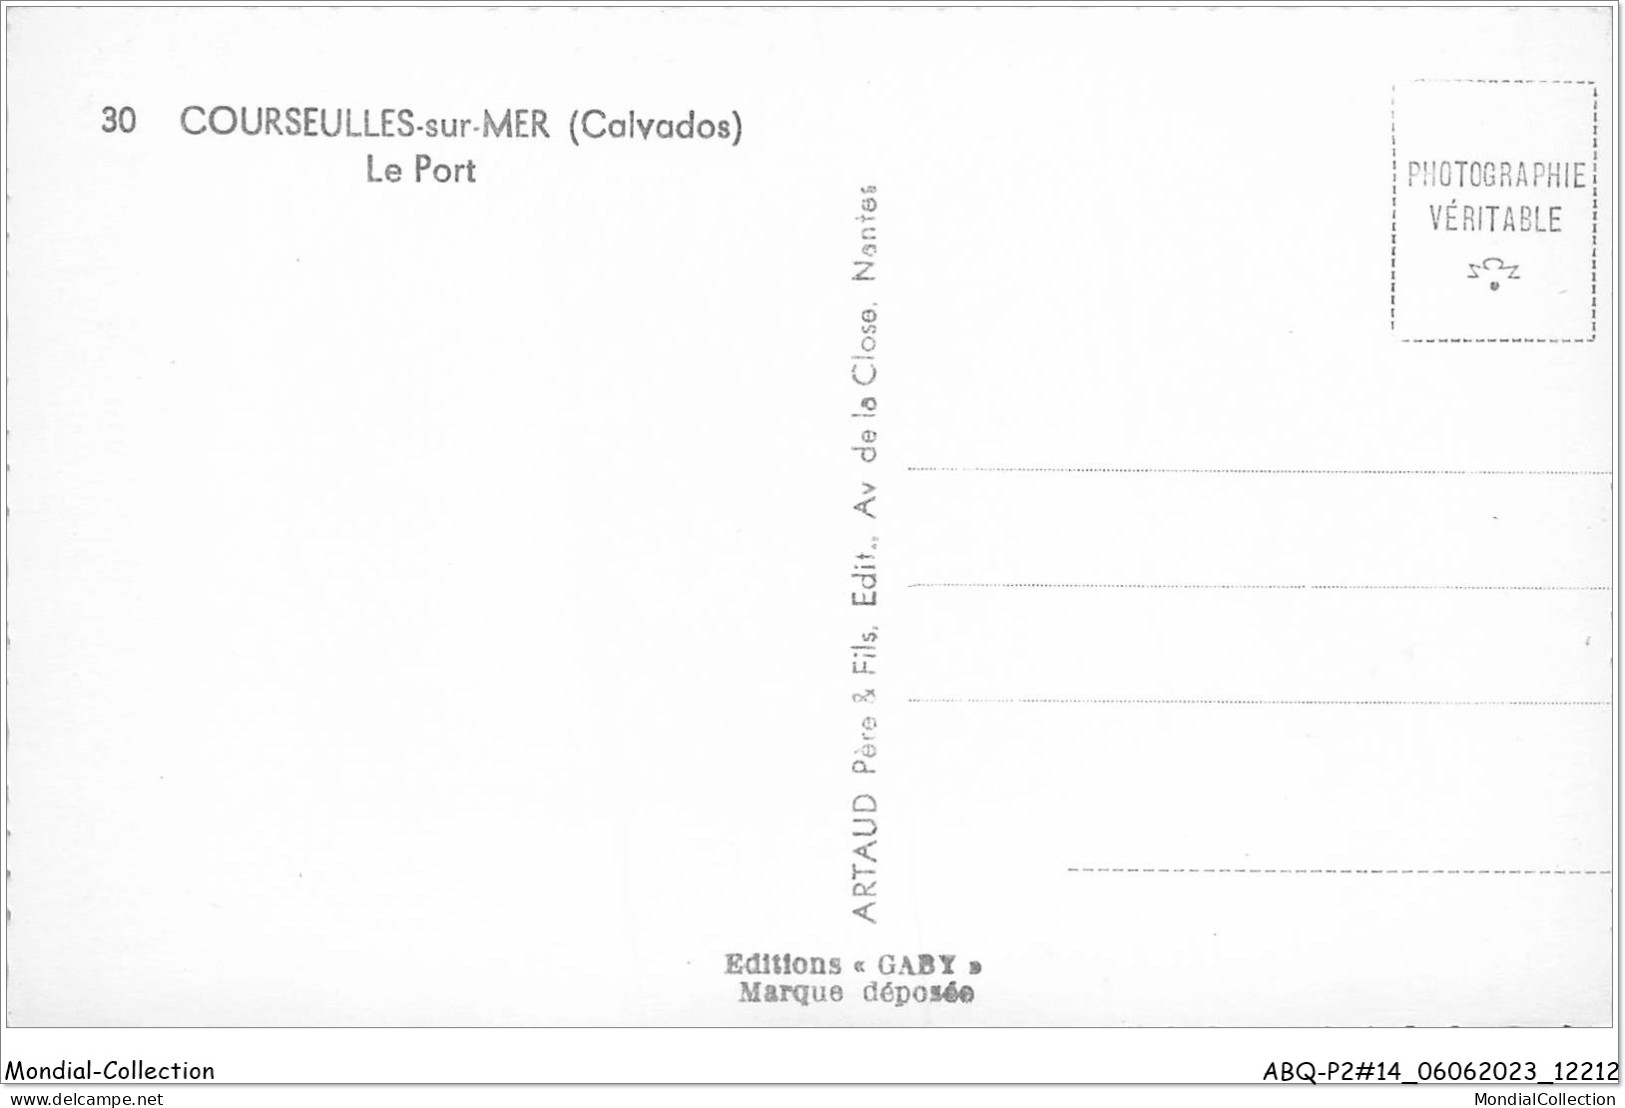 ABQP2-14-0107 - COURSEULLES-SUR-MER - Le Port - Courseulles-sur-Mer